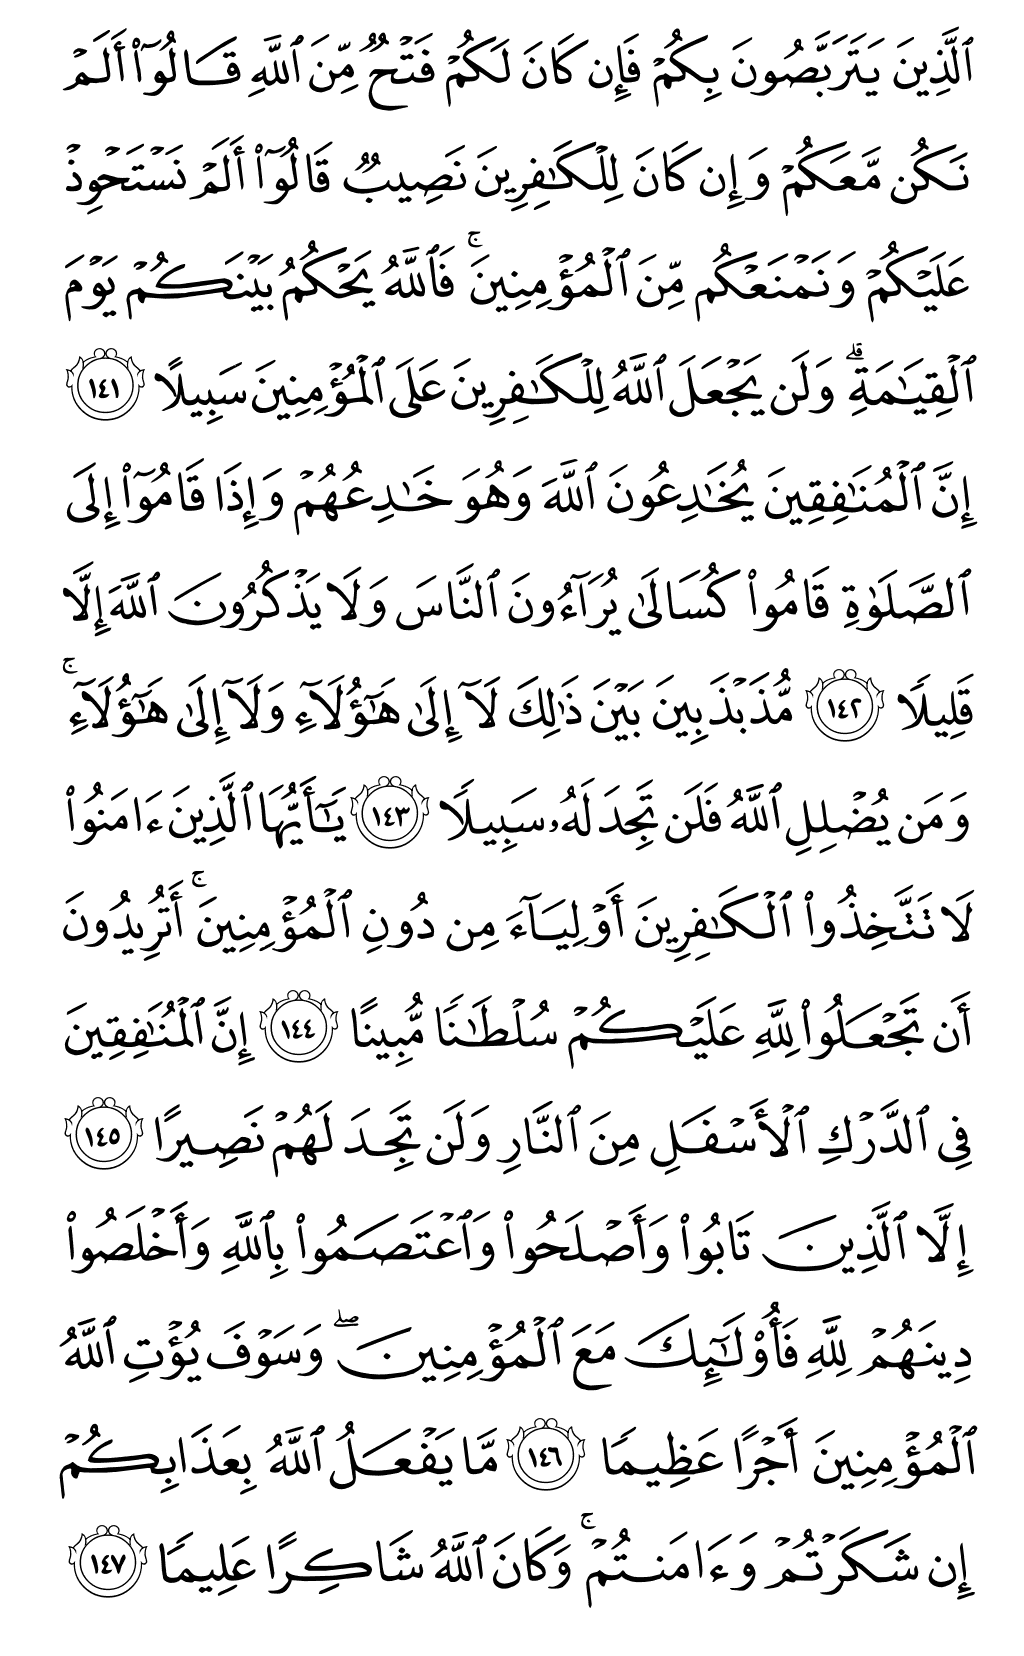 الصفحة رقم 101 من القرآن الكريم